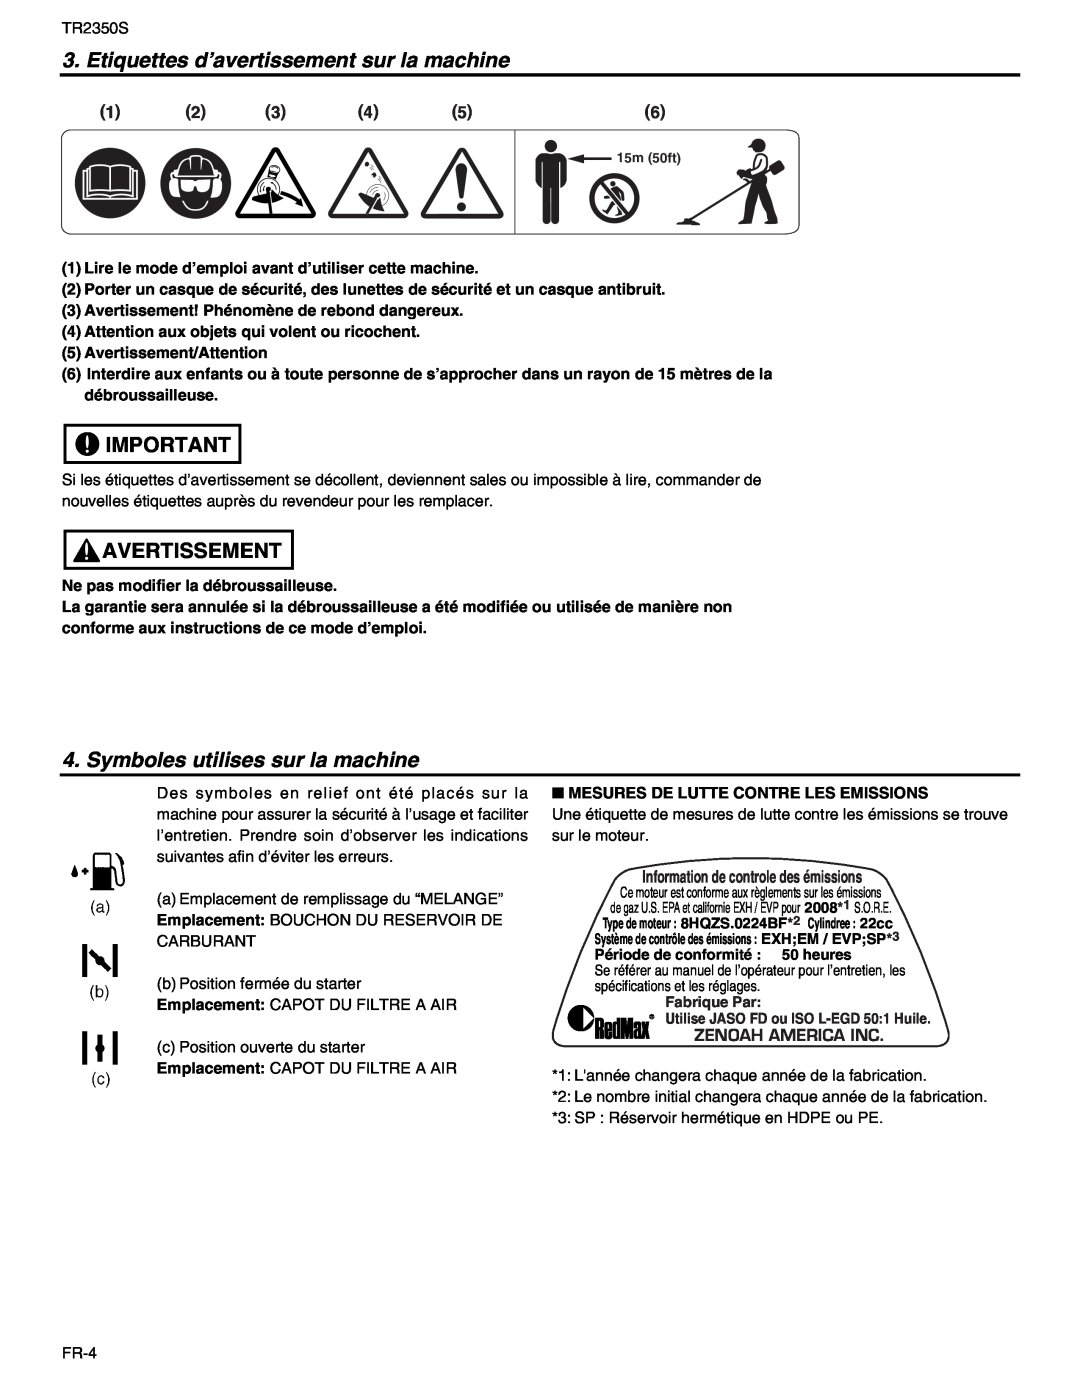 RedMax TR2350S manual Etiquettes d’avertissement sur la machine, Symboles utilises sur la machine, Avertissement 